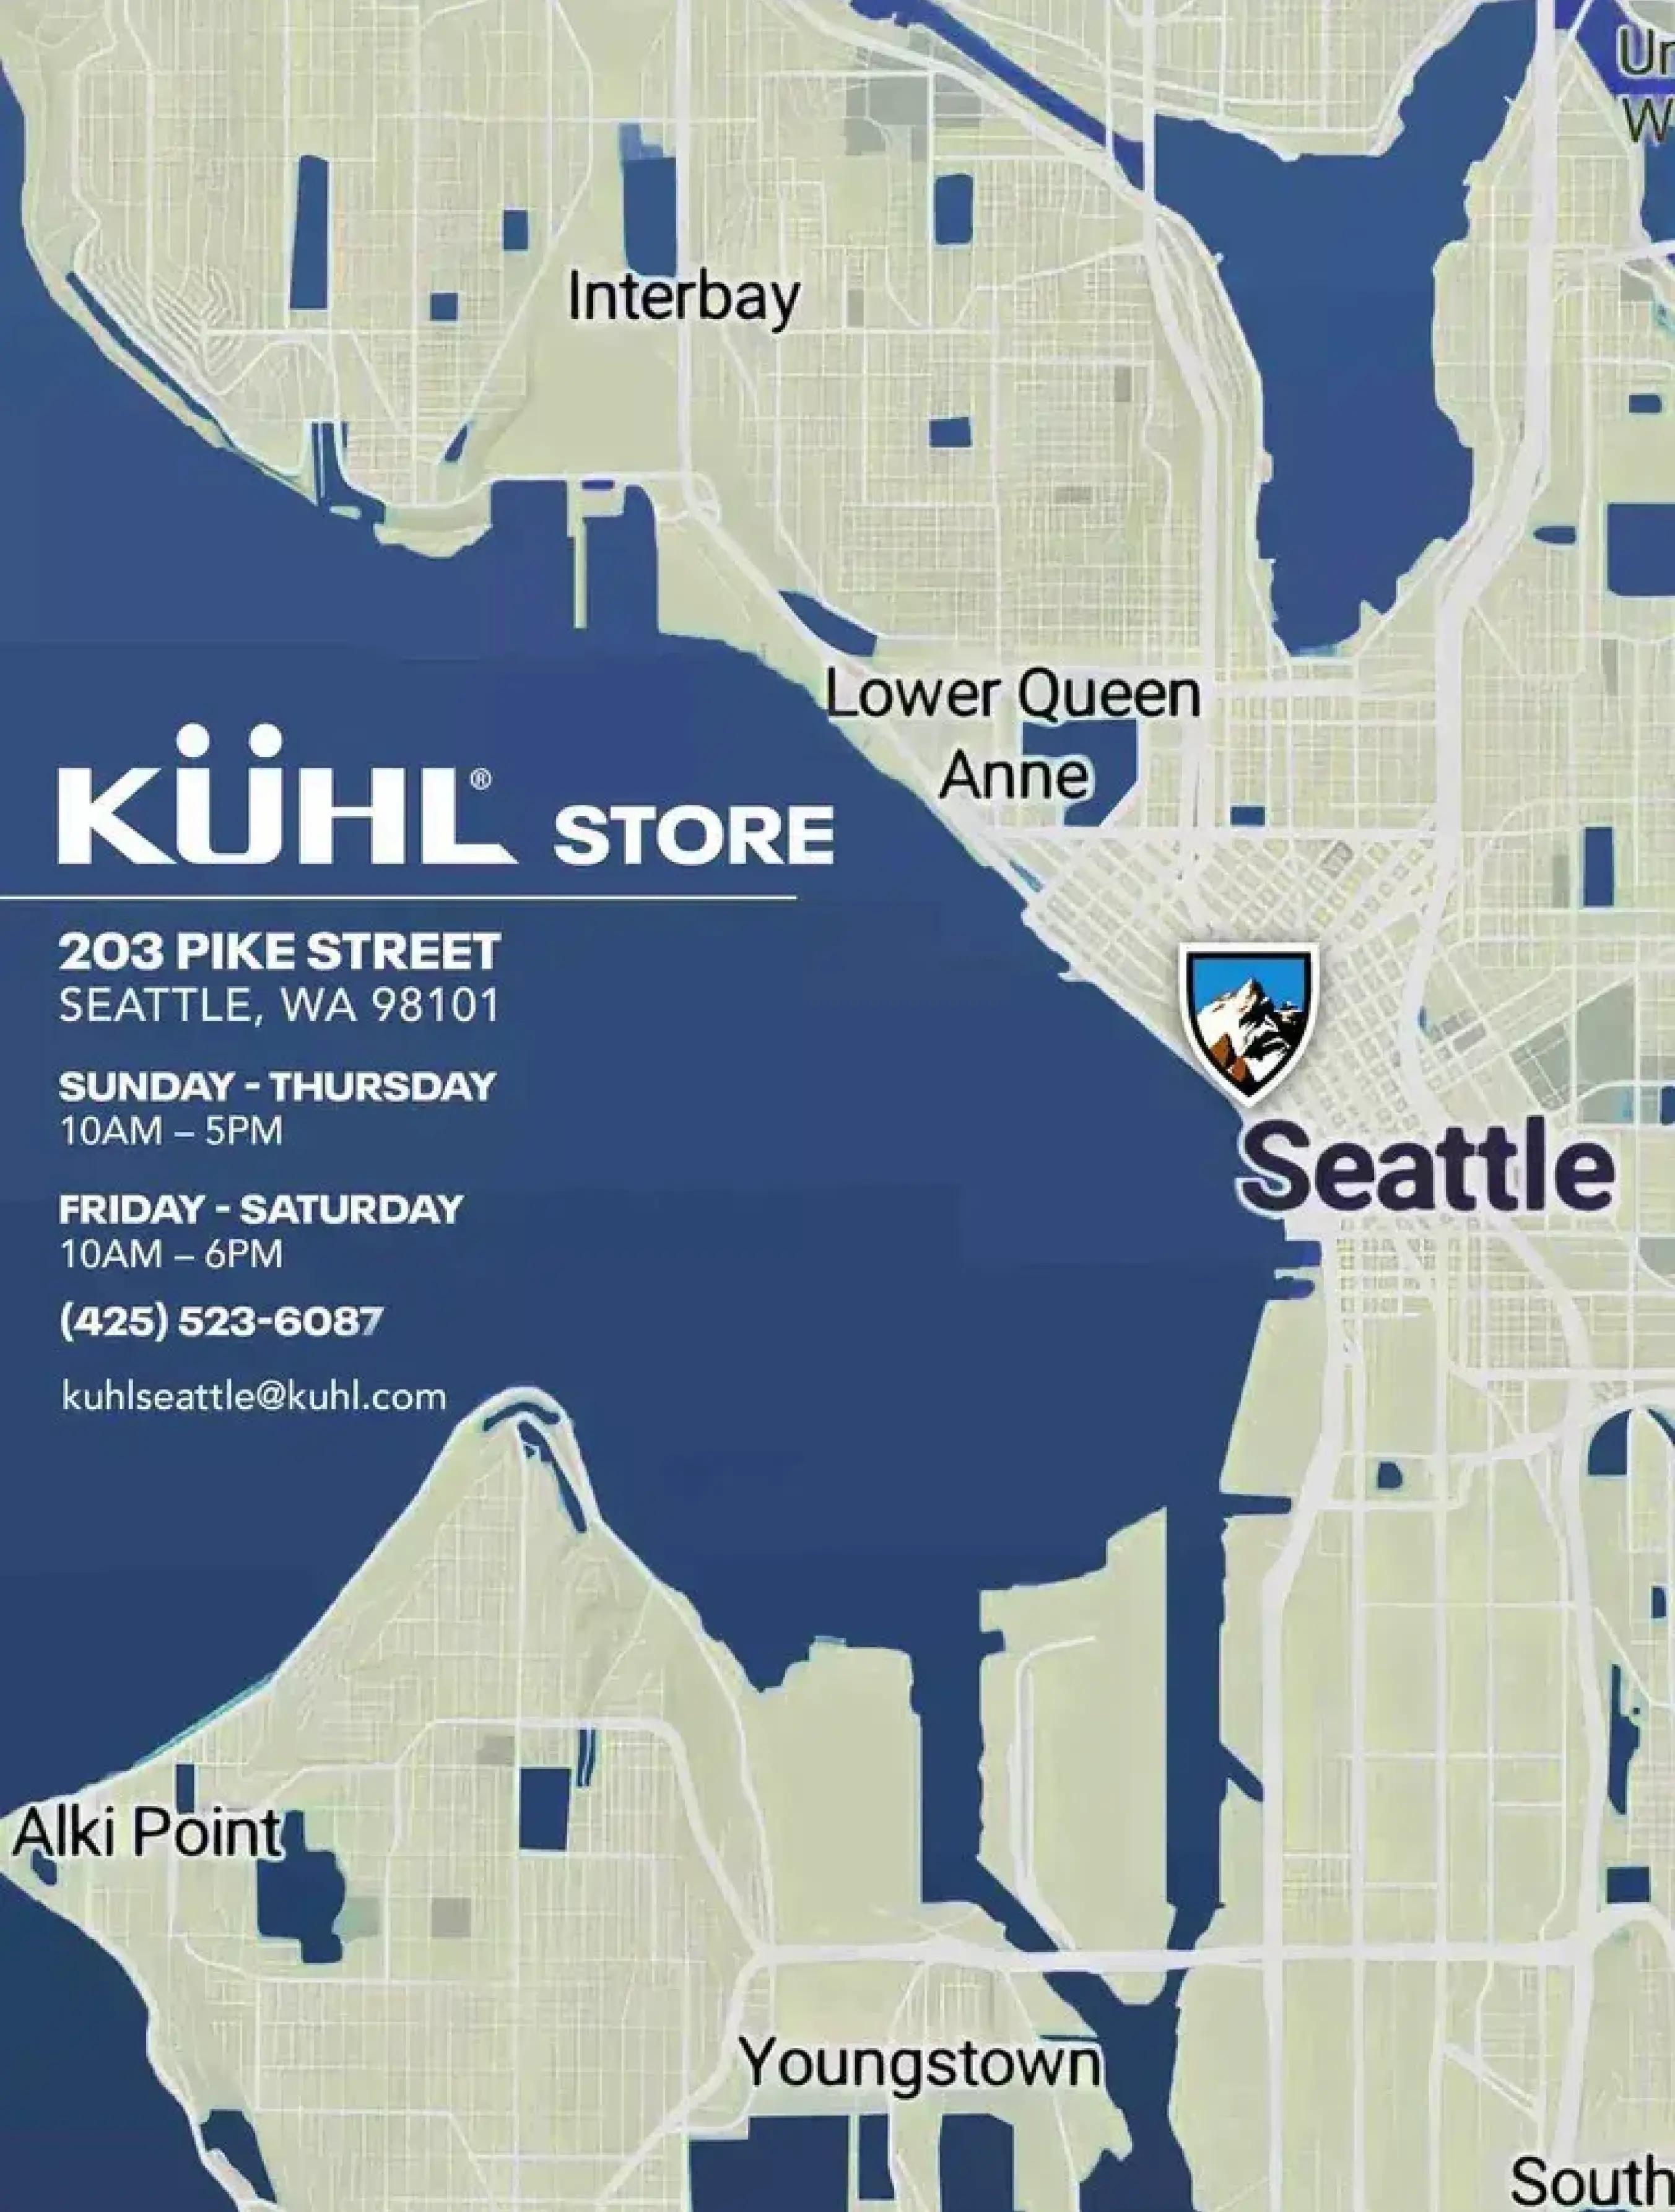 KUHL Seattle Store